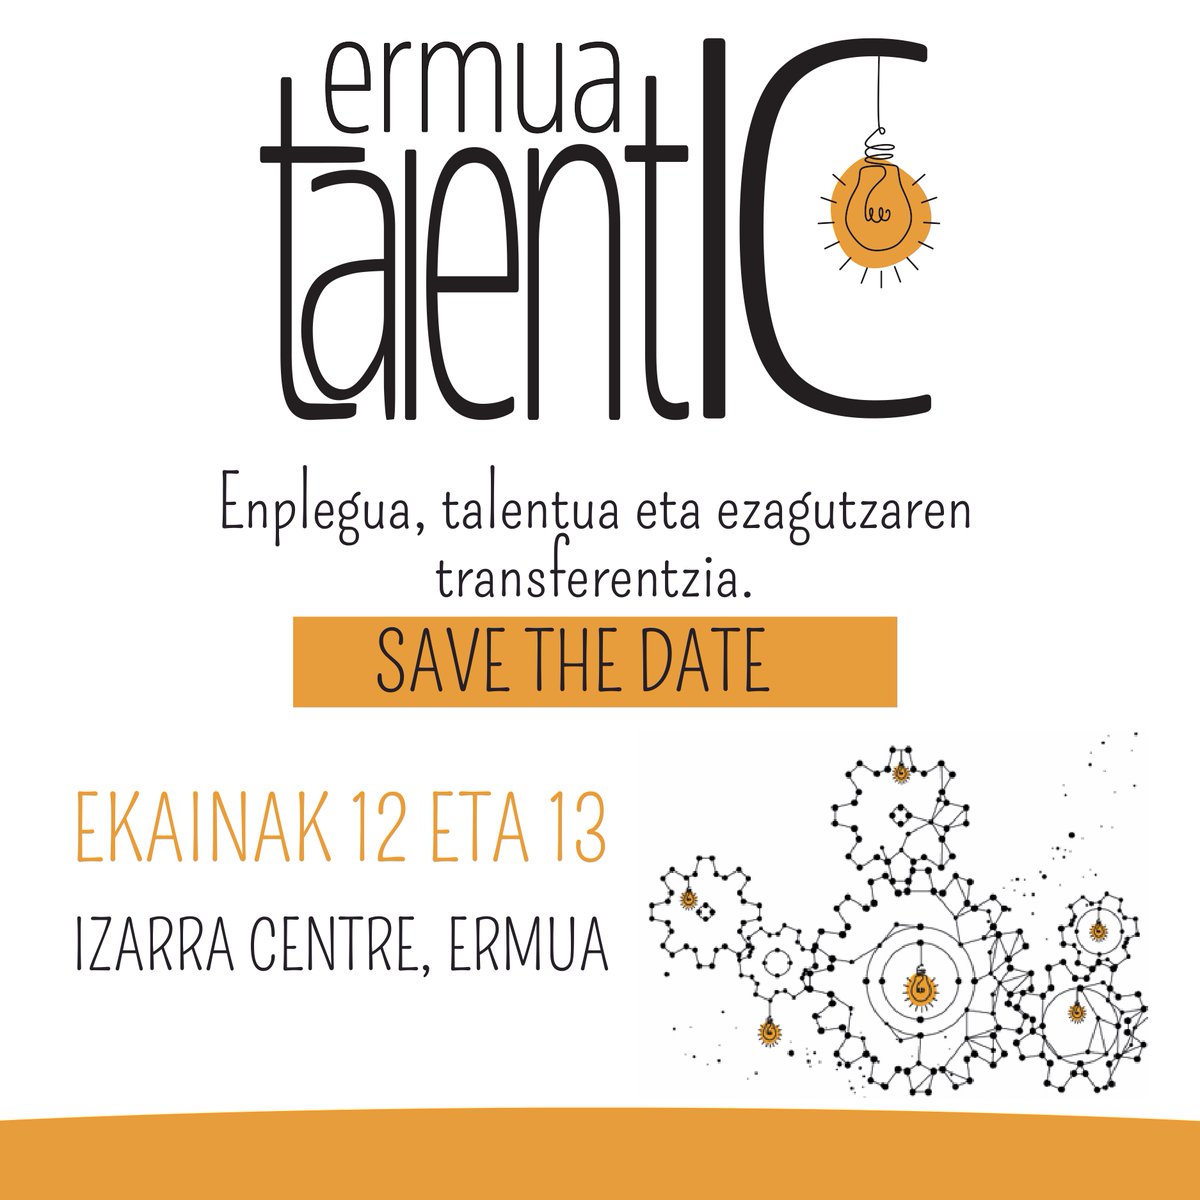 📢 Save the date | La tercera edición de Ermua TalentIC tendrá lugar el 12 y 13 de junio en @izarracentre, un evento organizado por el Ayuntamiento de Ermua y la @redinnpulso. 💡 Este año, enfocado en explorar y potenciar el empleo mediante la innovación y el talento.